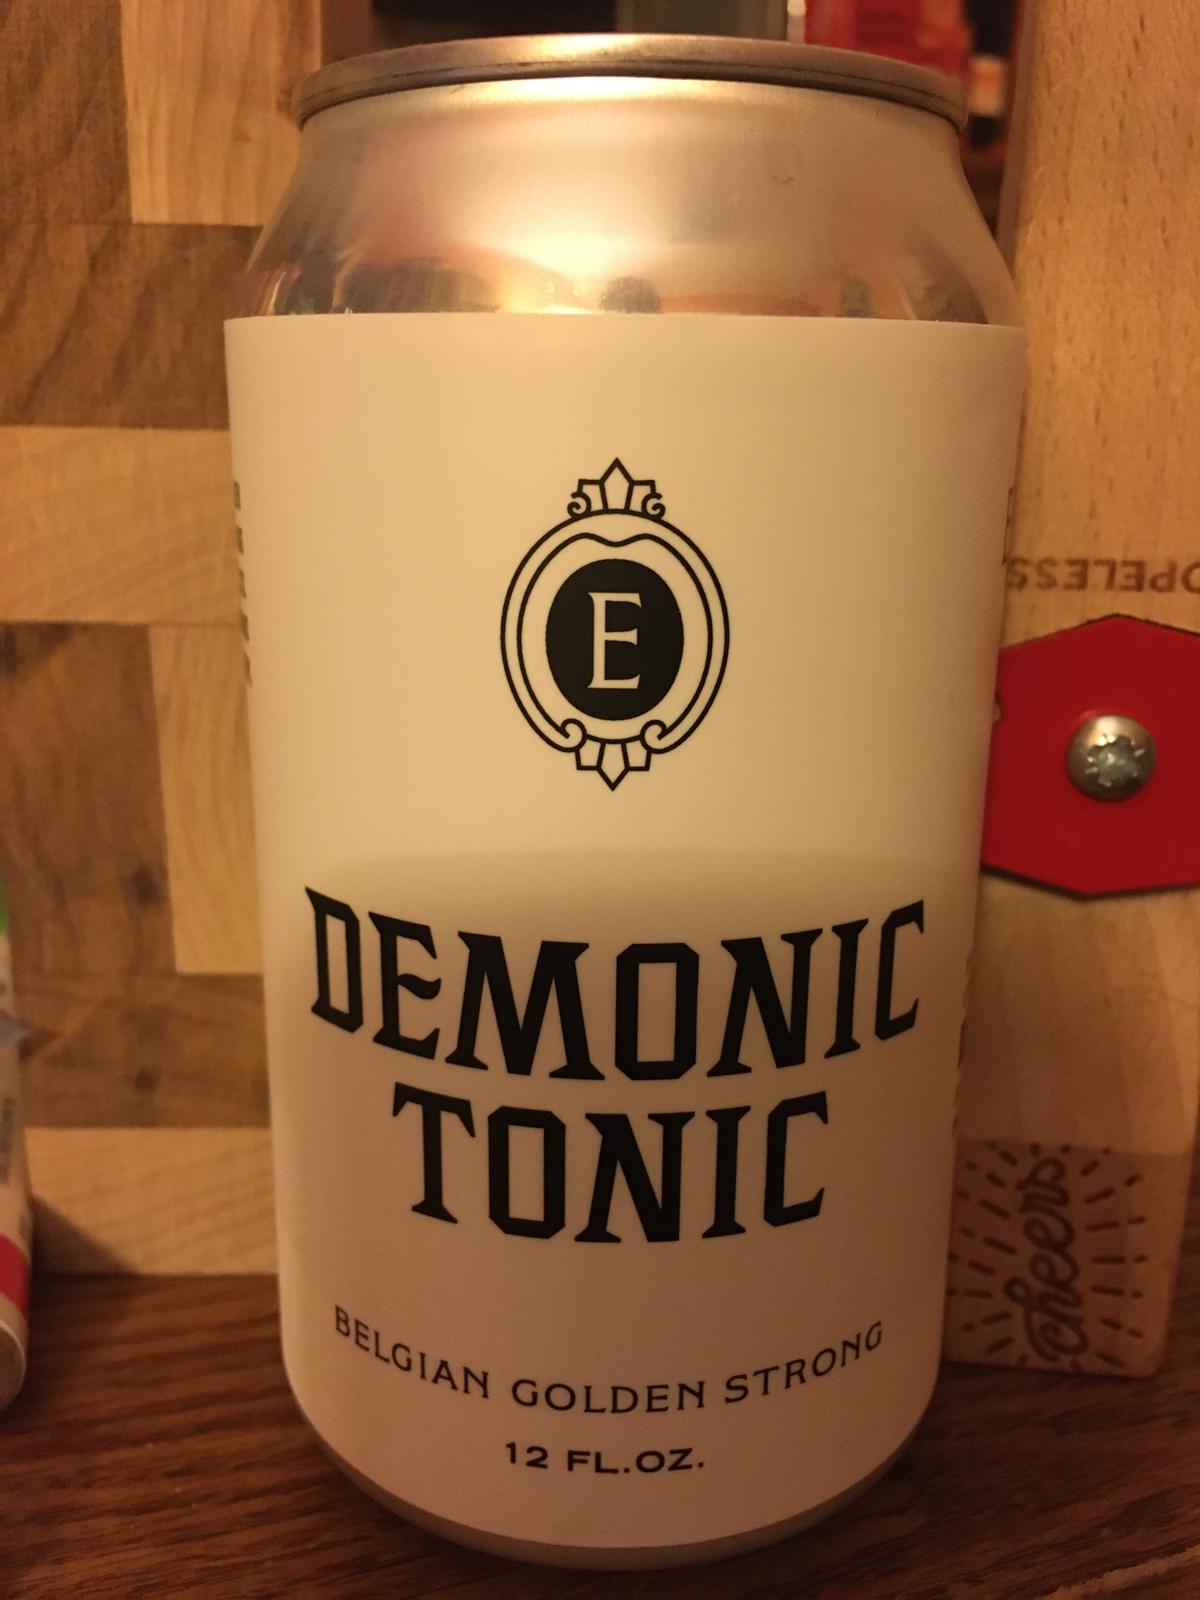 Demonic Tonic